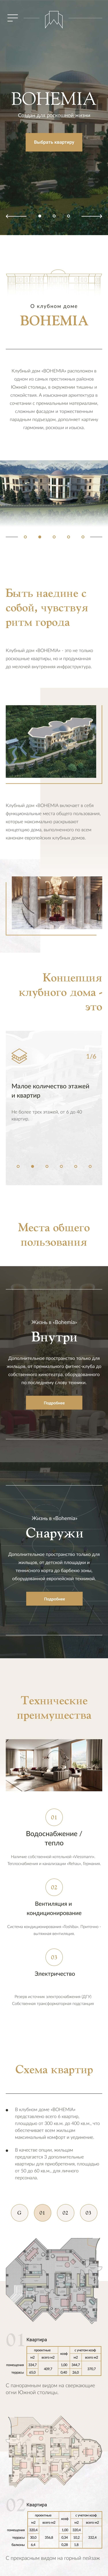 Дизайн сайта BOHEMIA для мобильных устройств